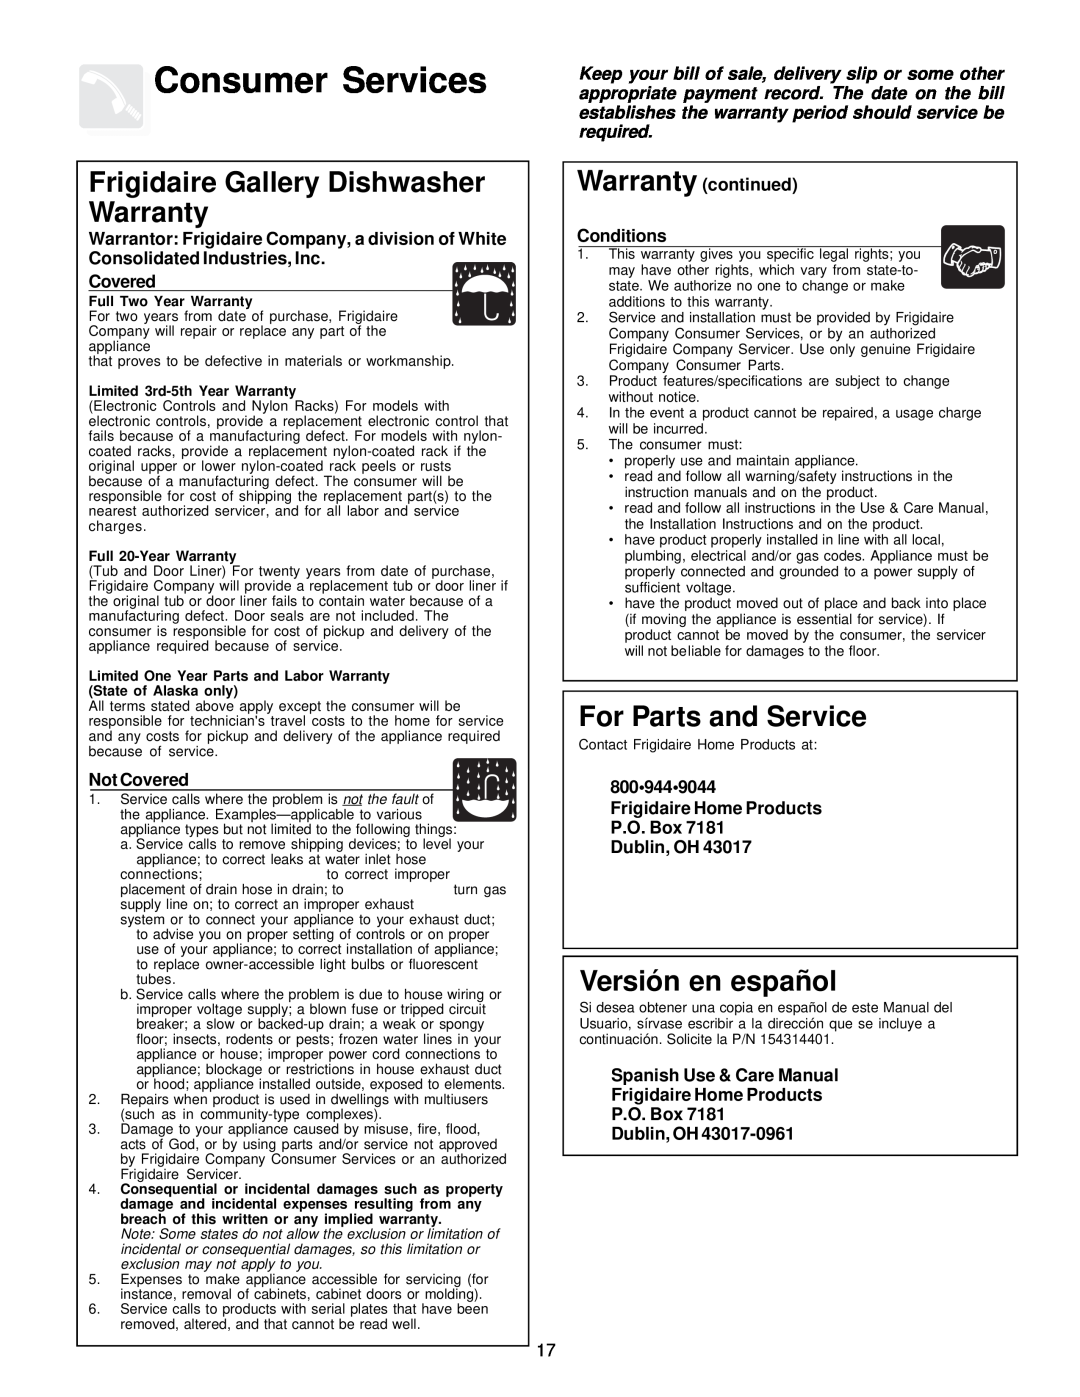 Frigidaire FDB836 Consumer Services, Frigidaire Gallery Dishwasher Warranty, For Parts and Service, Versión en español 